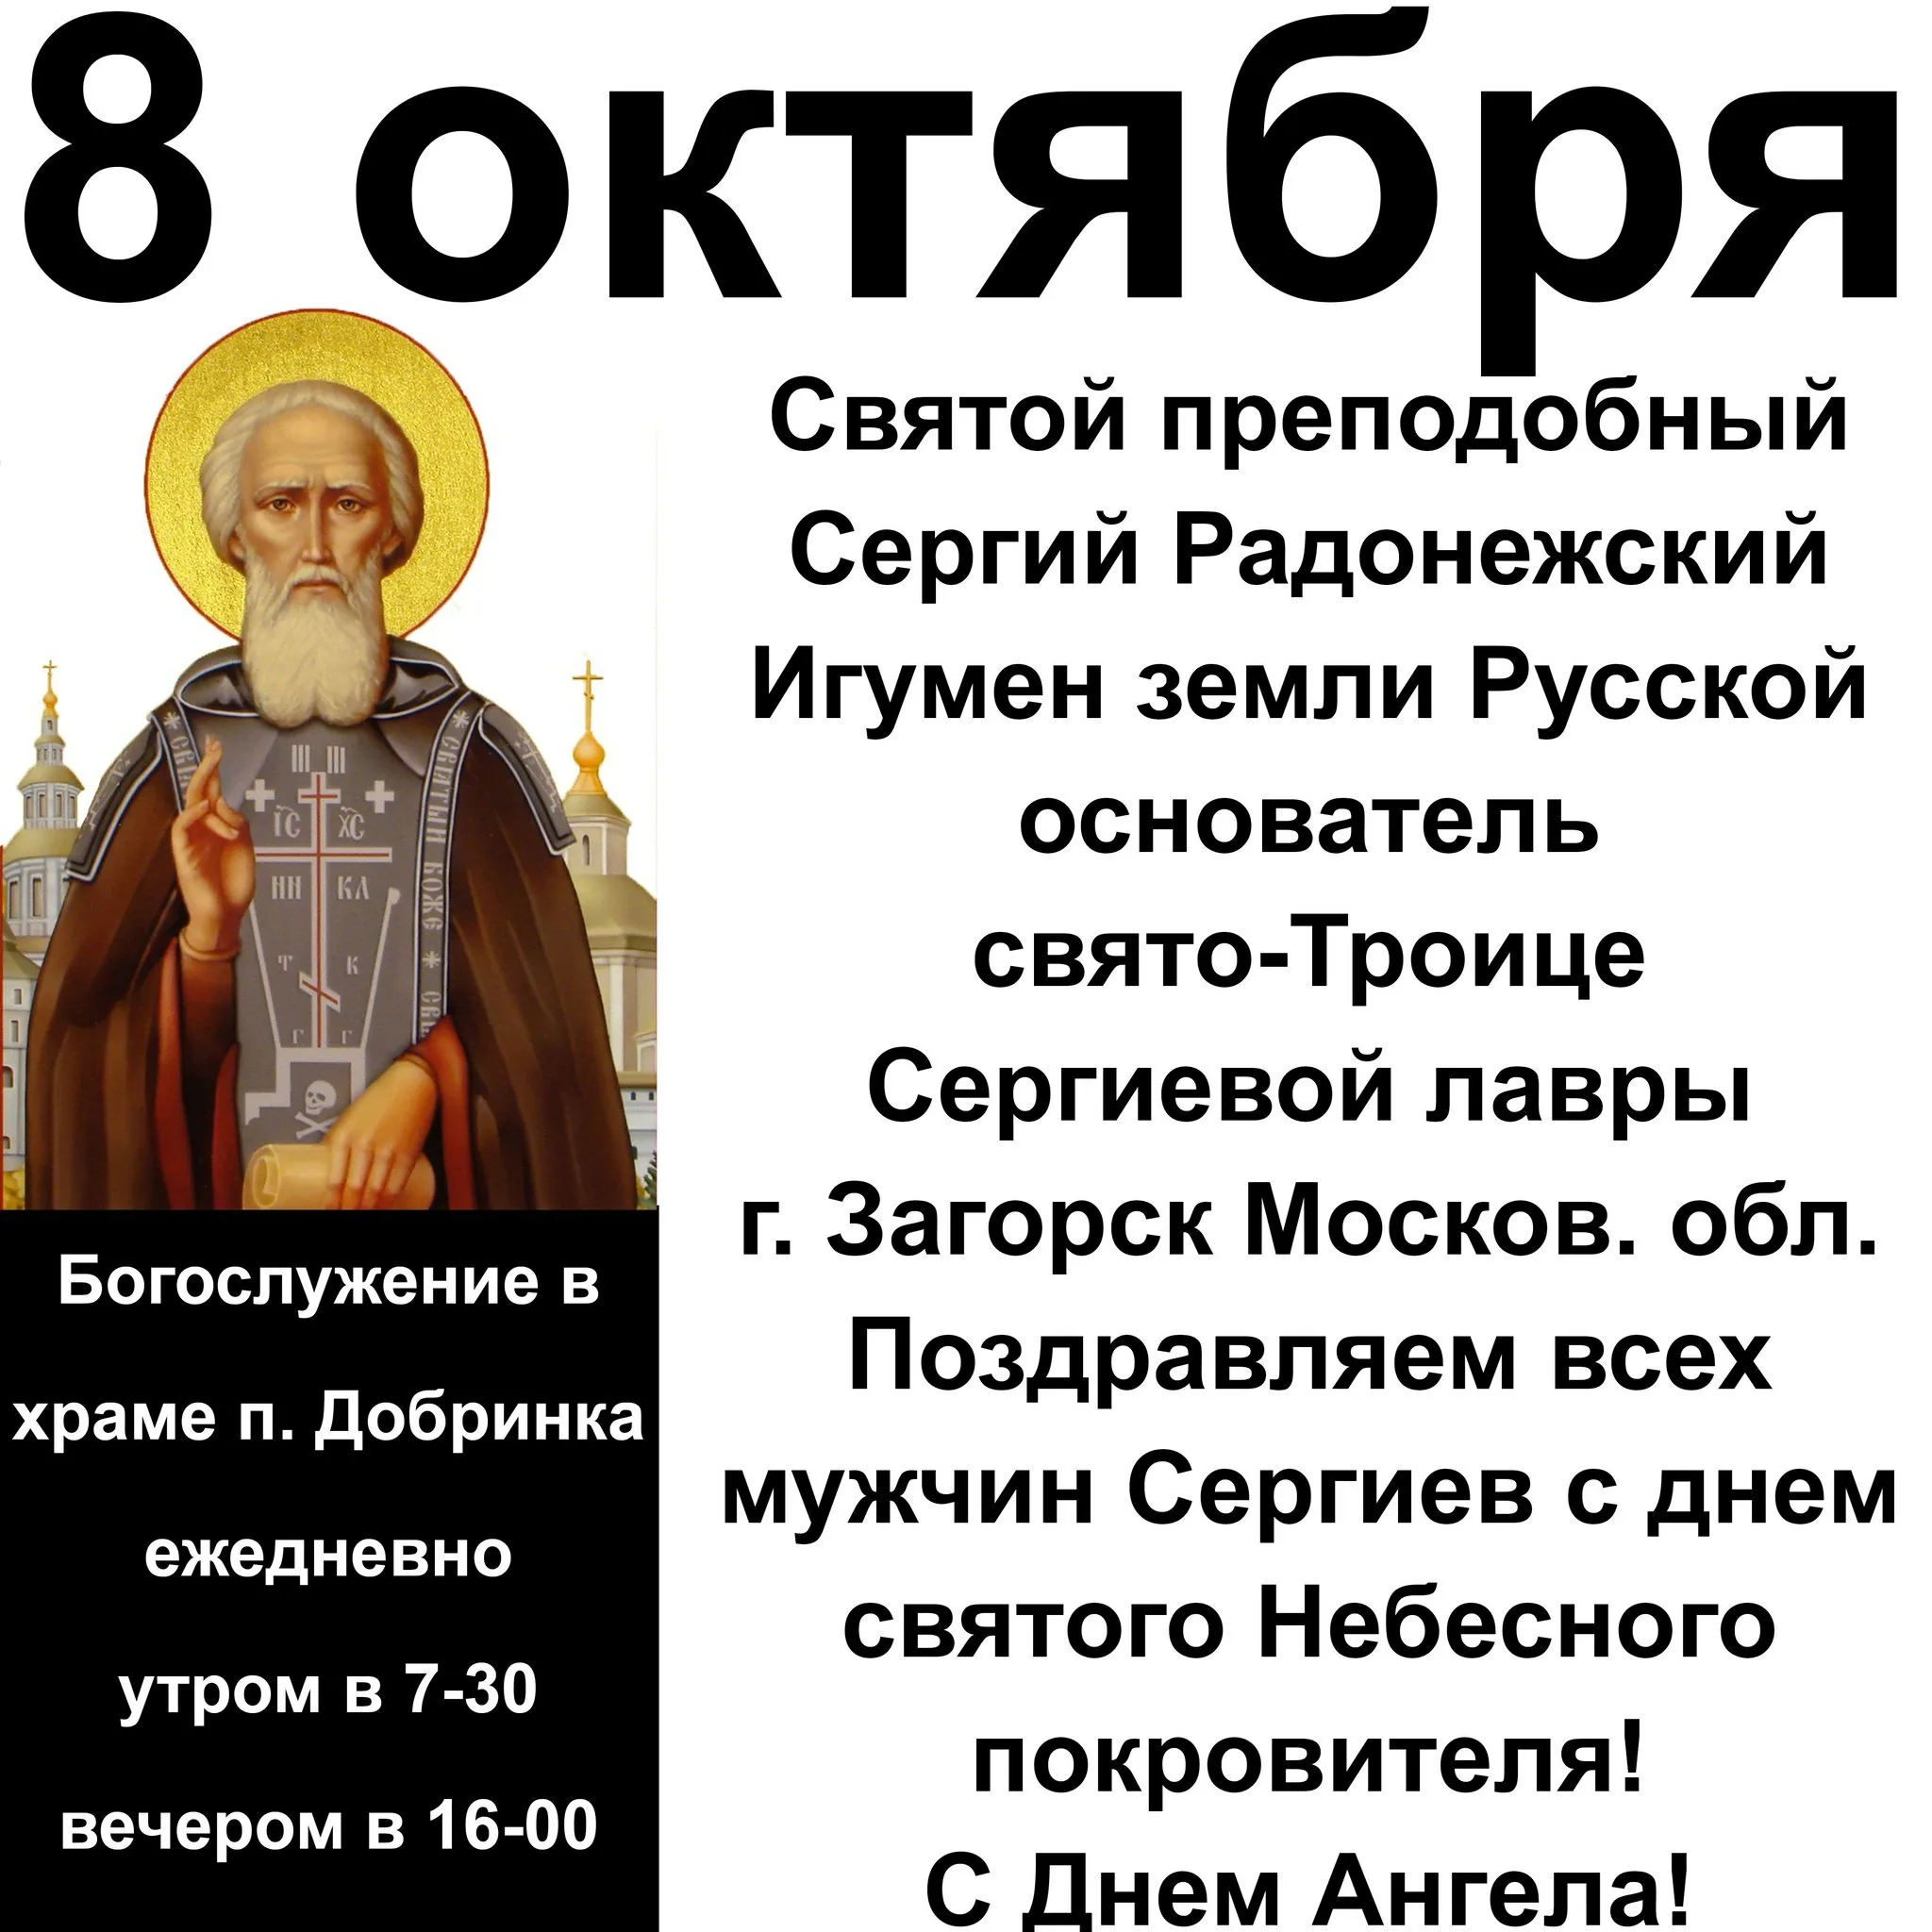 День памяти Сергия Радонежского 8 октября. С праздником преподобного Сергия Радонежского 8 октября. Дата 8 октября